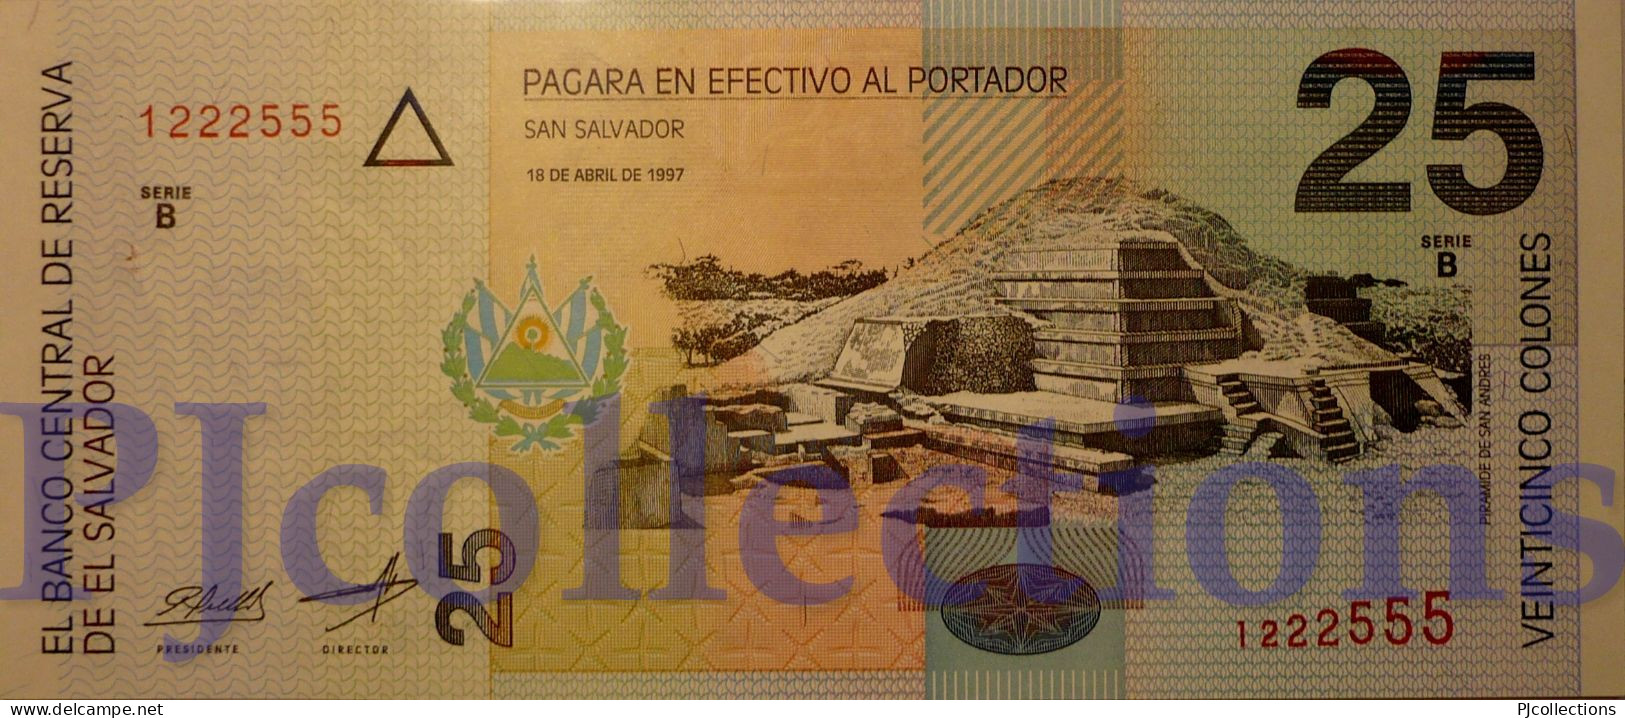 EL SALVADOR 25 COLONES 1997 PICK 149a UNC GOOD SERIAL NUMBER "1222555" - Salvador